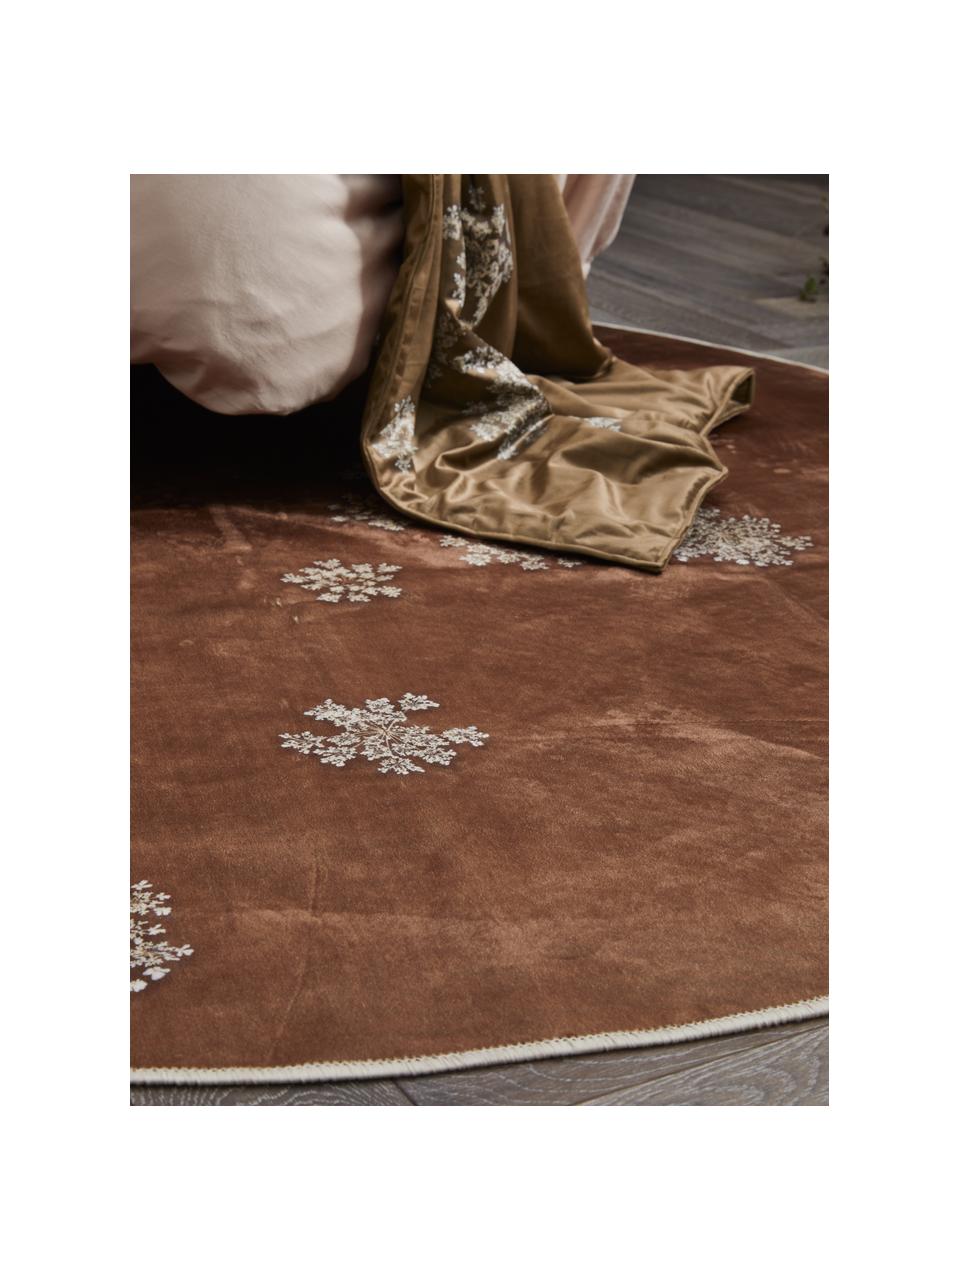 Runder Teppich Lauren mit Blumenprint, 60% Polyester, 30% thermoplastisches Polyurethan, 10% Baumwolle, Braun, Beige, Ø 90 cm (Größe XS)